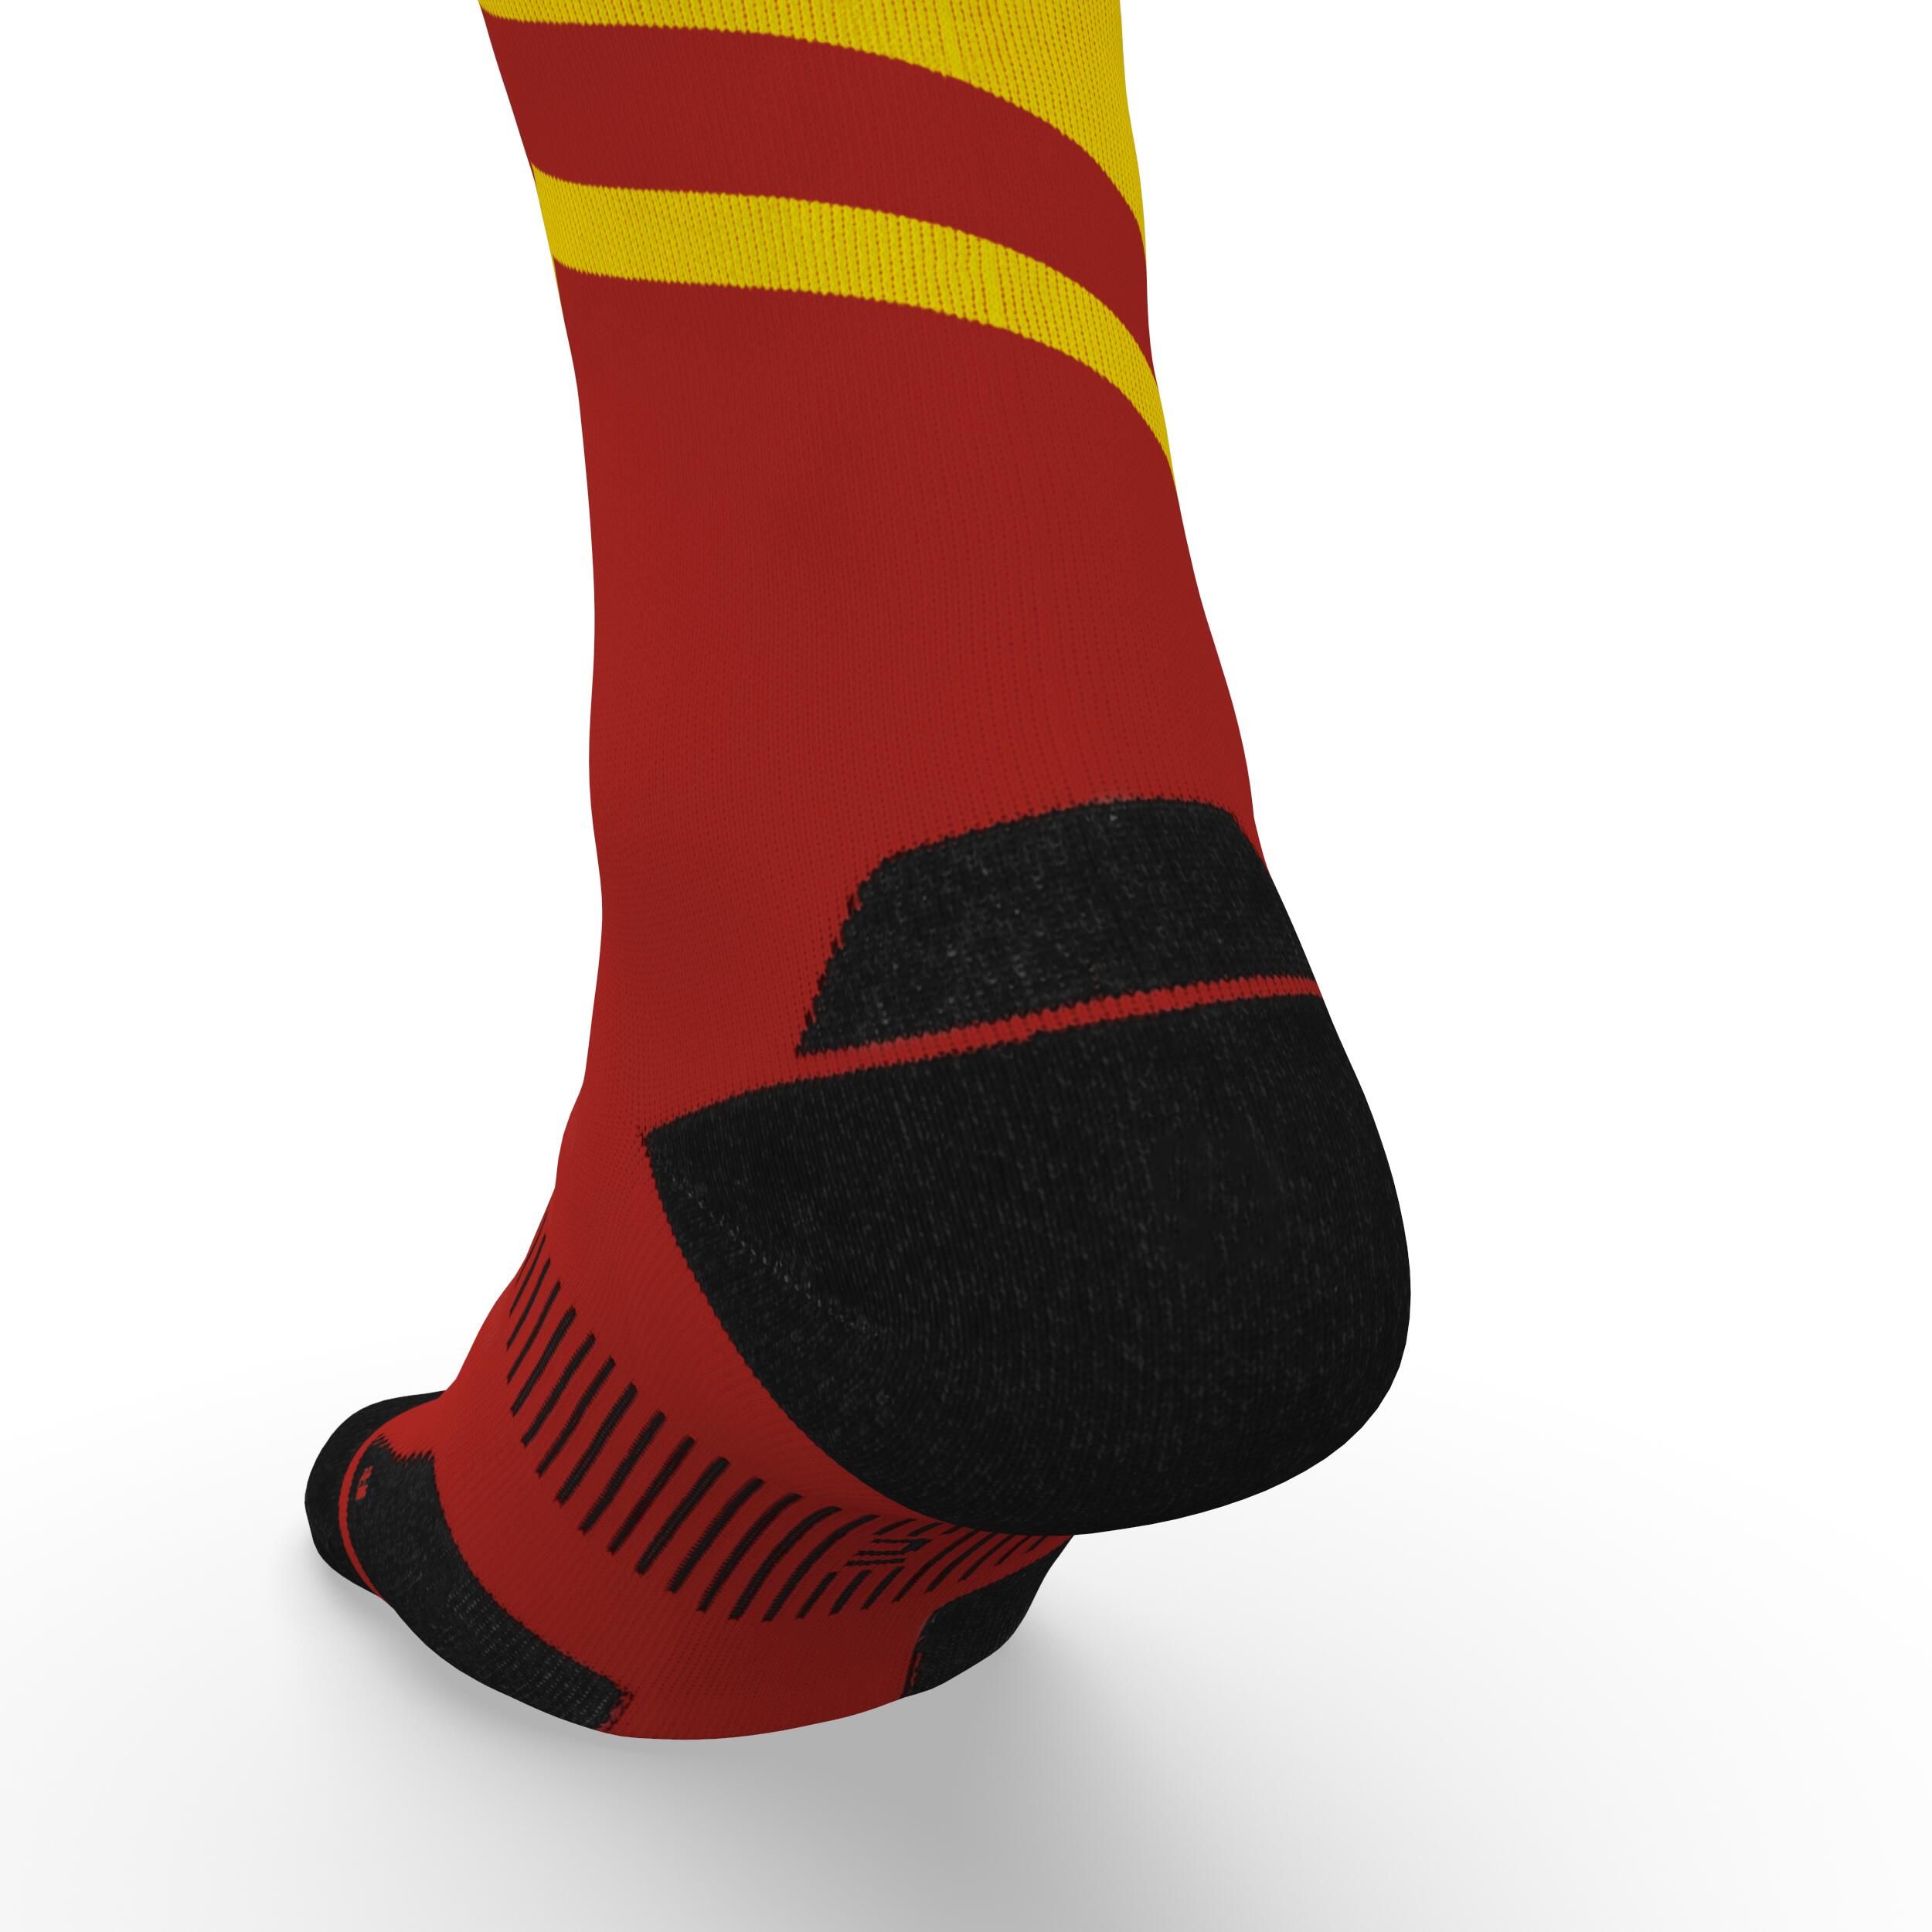 Run900 Mid-Calf Thick Running Socks - Red/Yellow 6/6